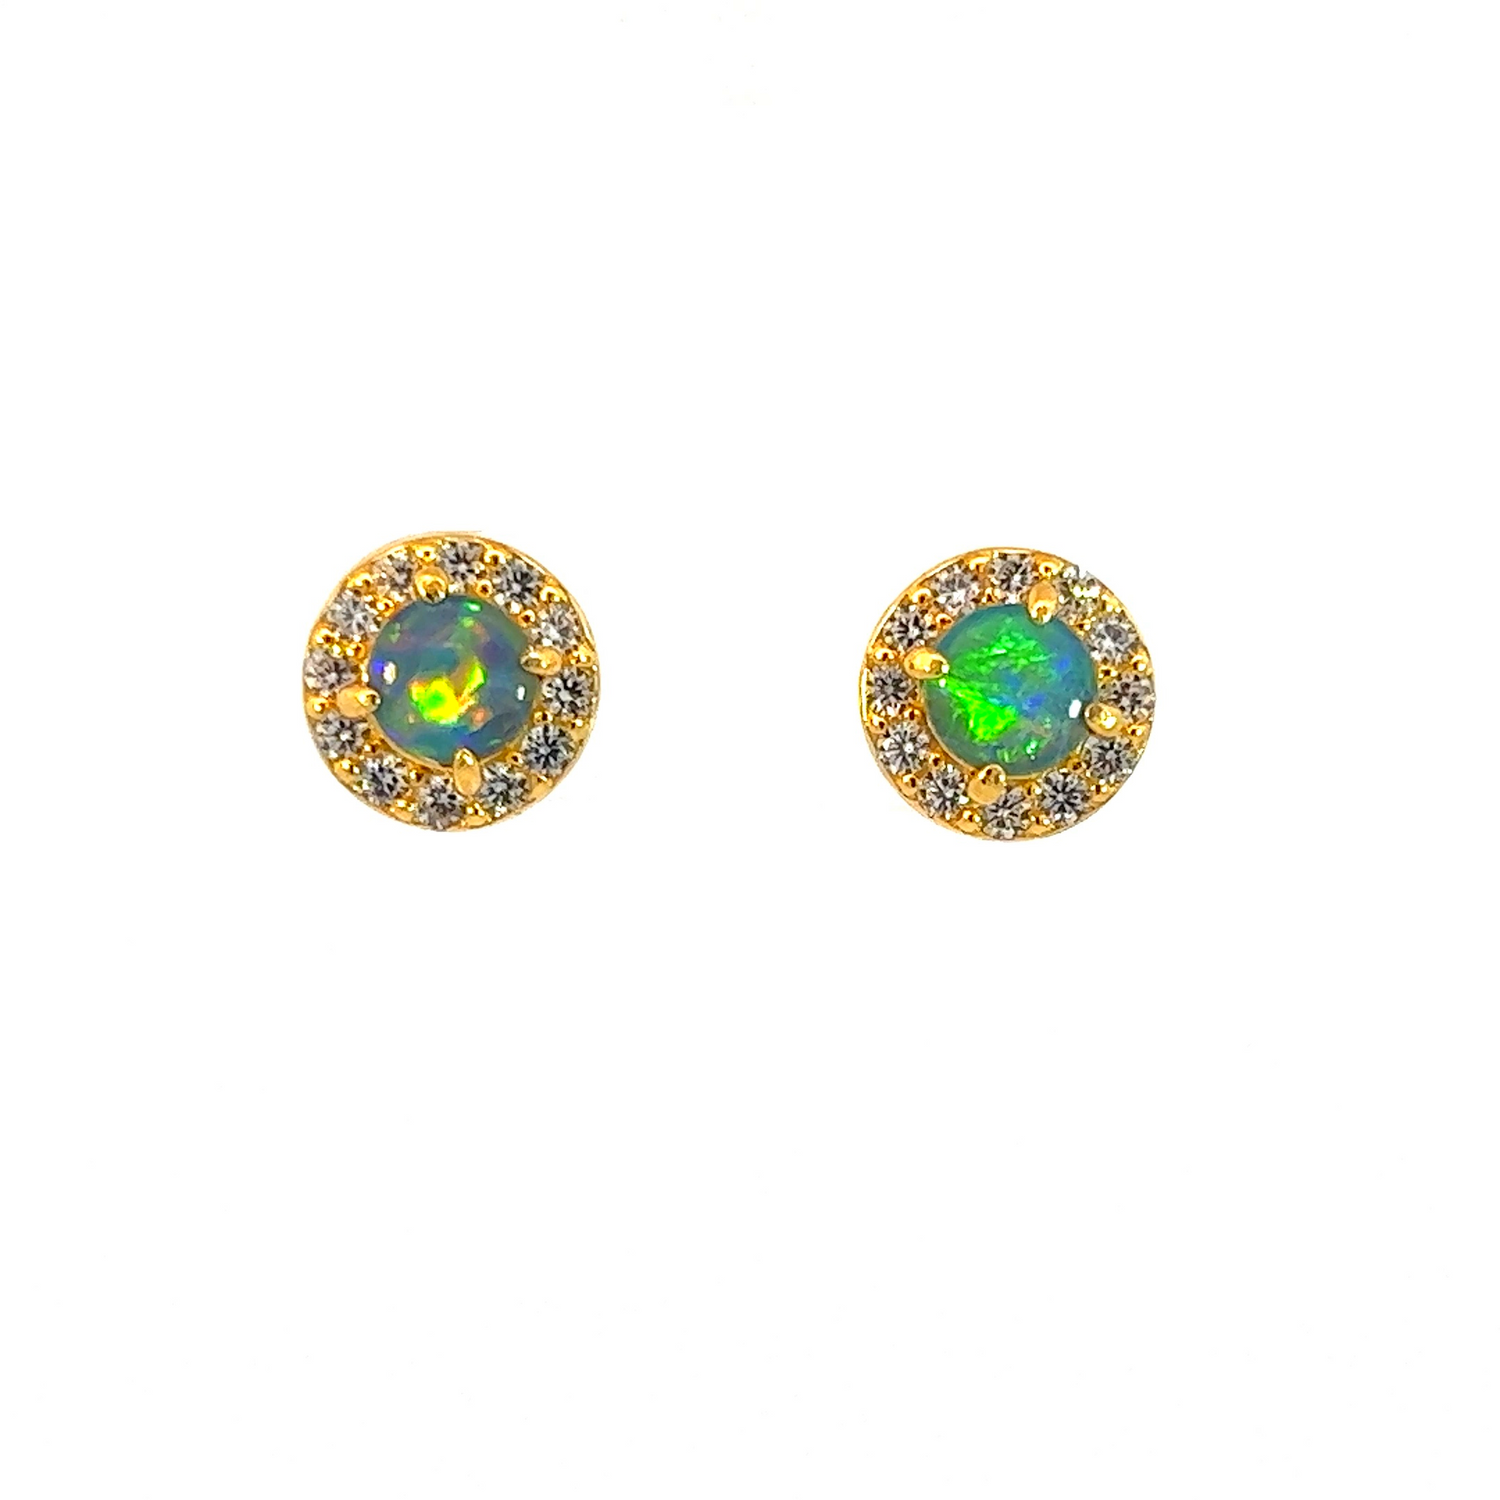 Gold Plated Sterling Silver 5mm Opal triplet halo earring studs - Masterpiece Jewellery Opal & Gems Sydney Australia | Online Shop